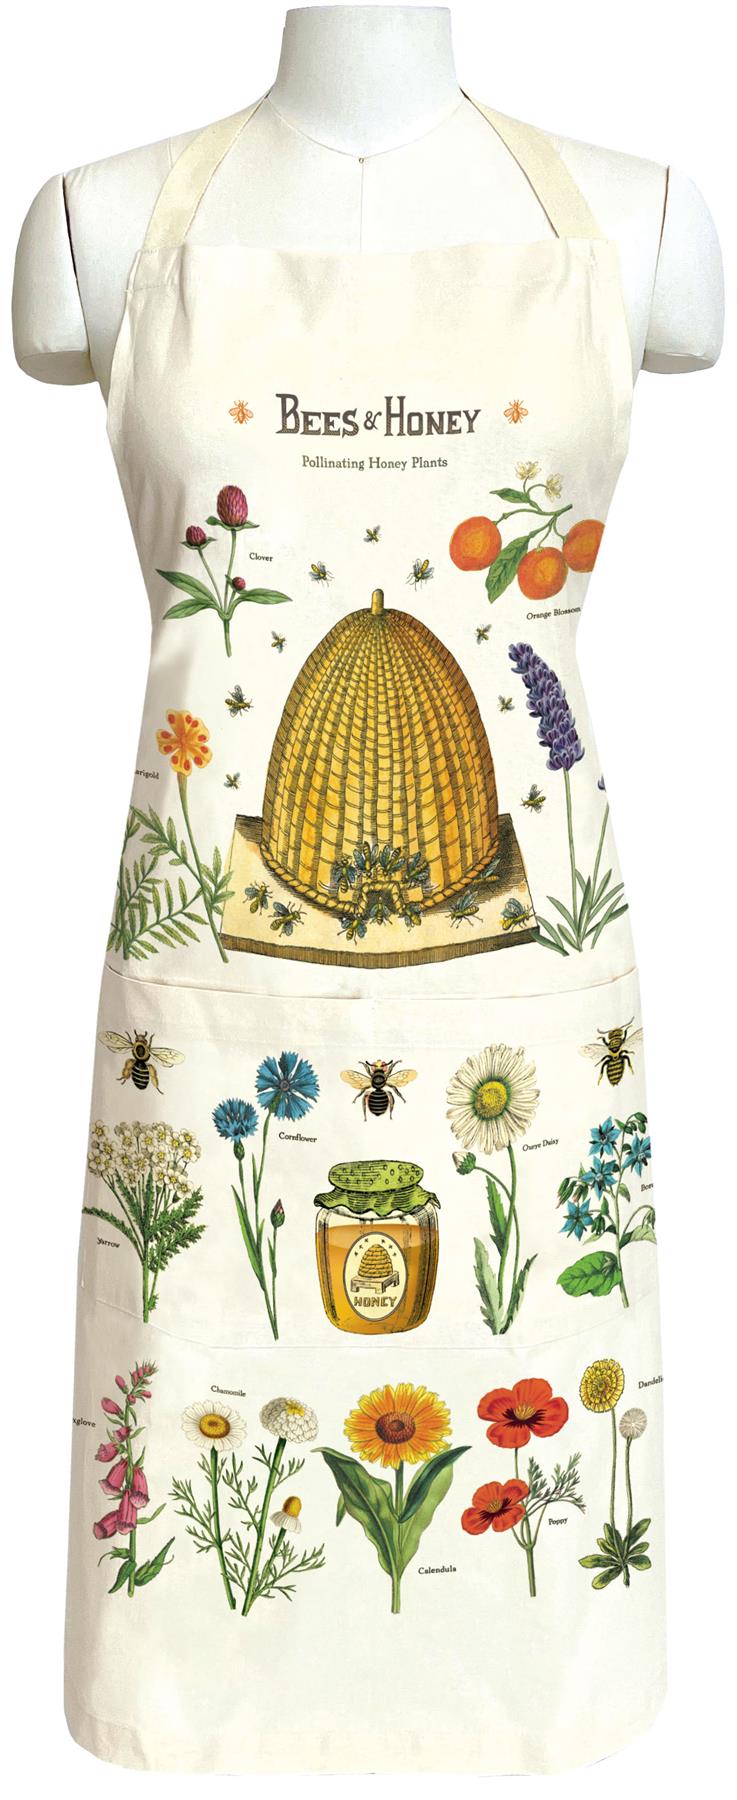 Cavallini - 100% Natural Cotton Vintage Apron - 48x80cms - Bees & Honey